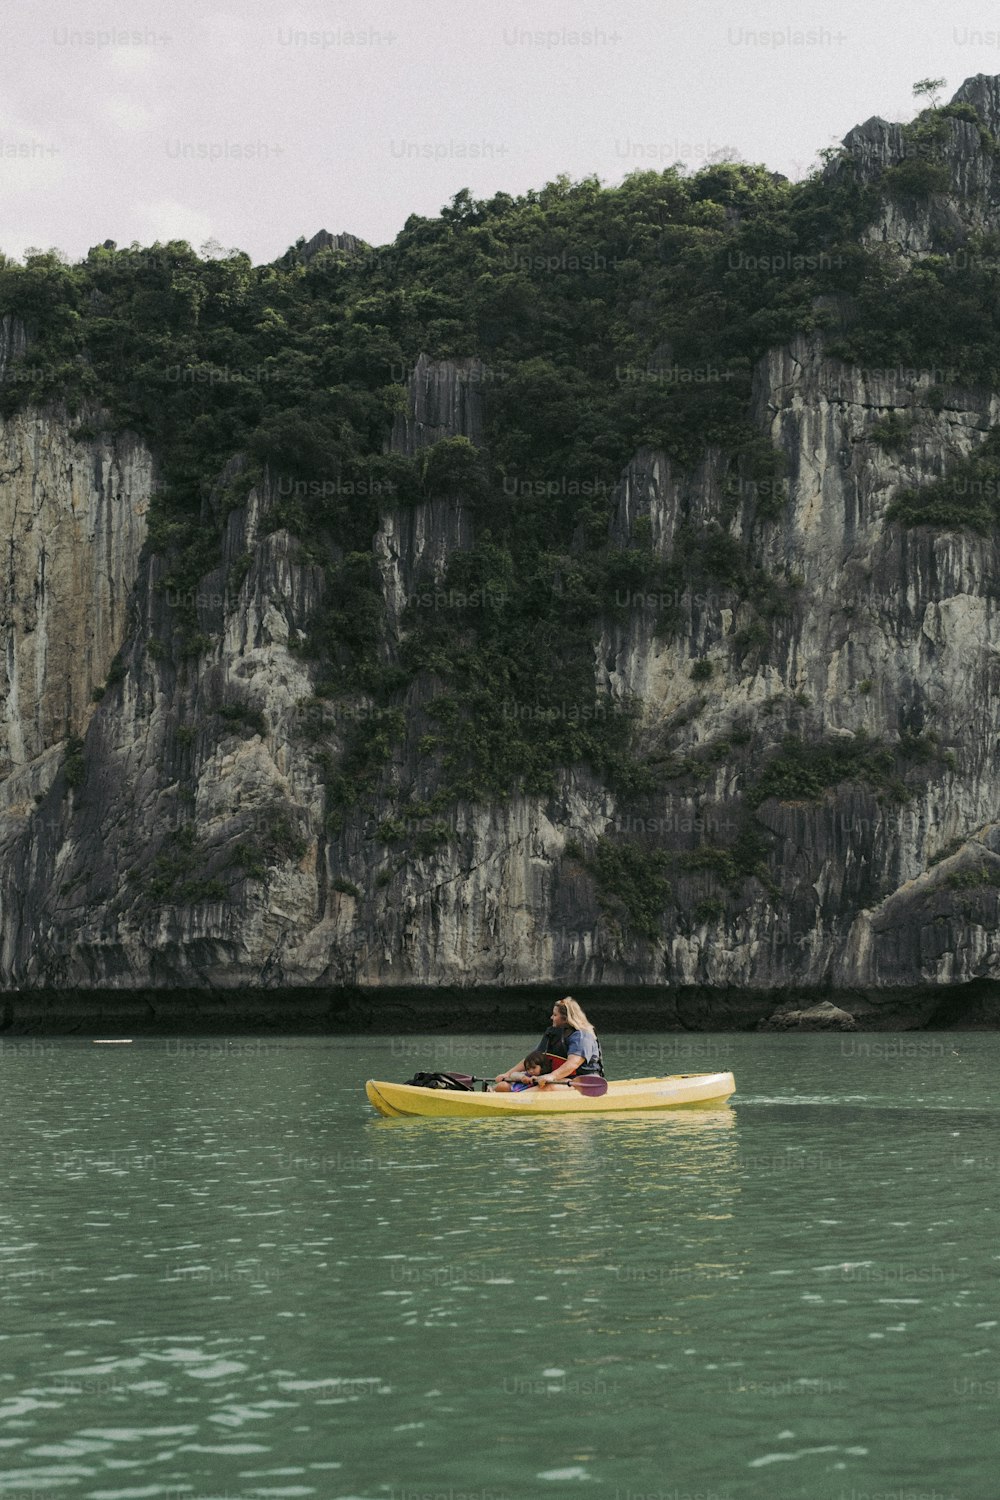 Una persona en un bote amarillo en un cuerpo de agua